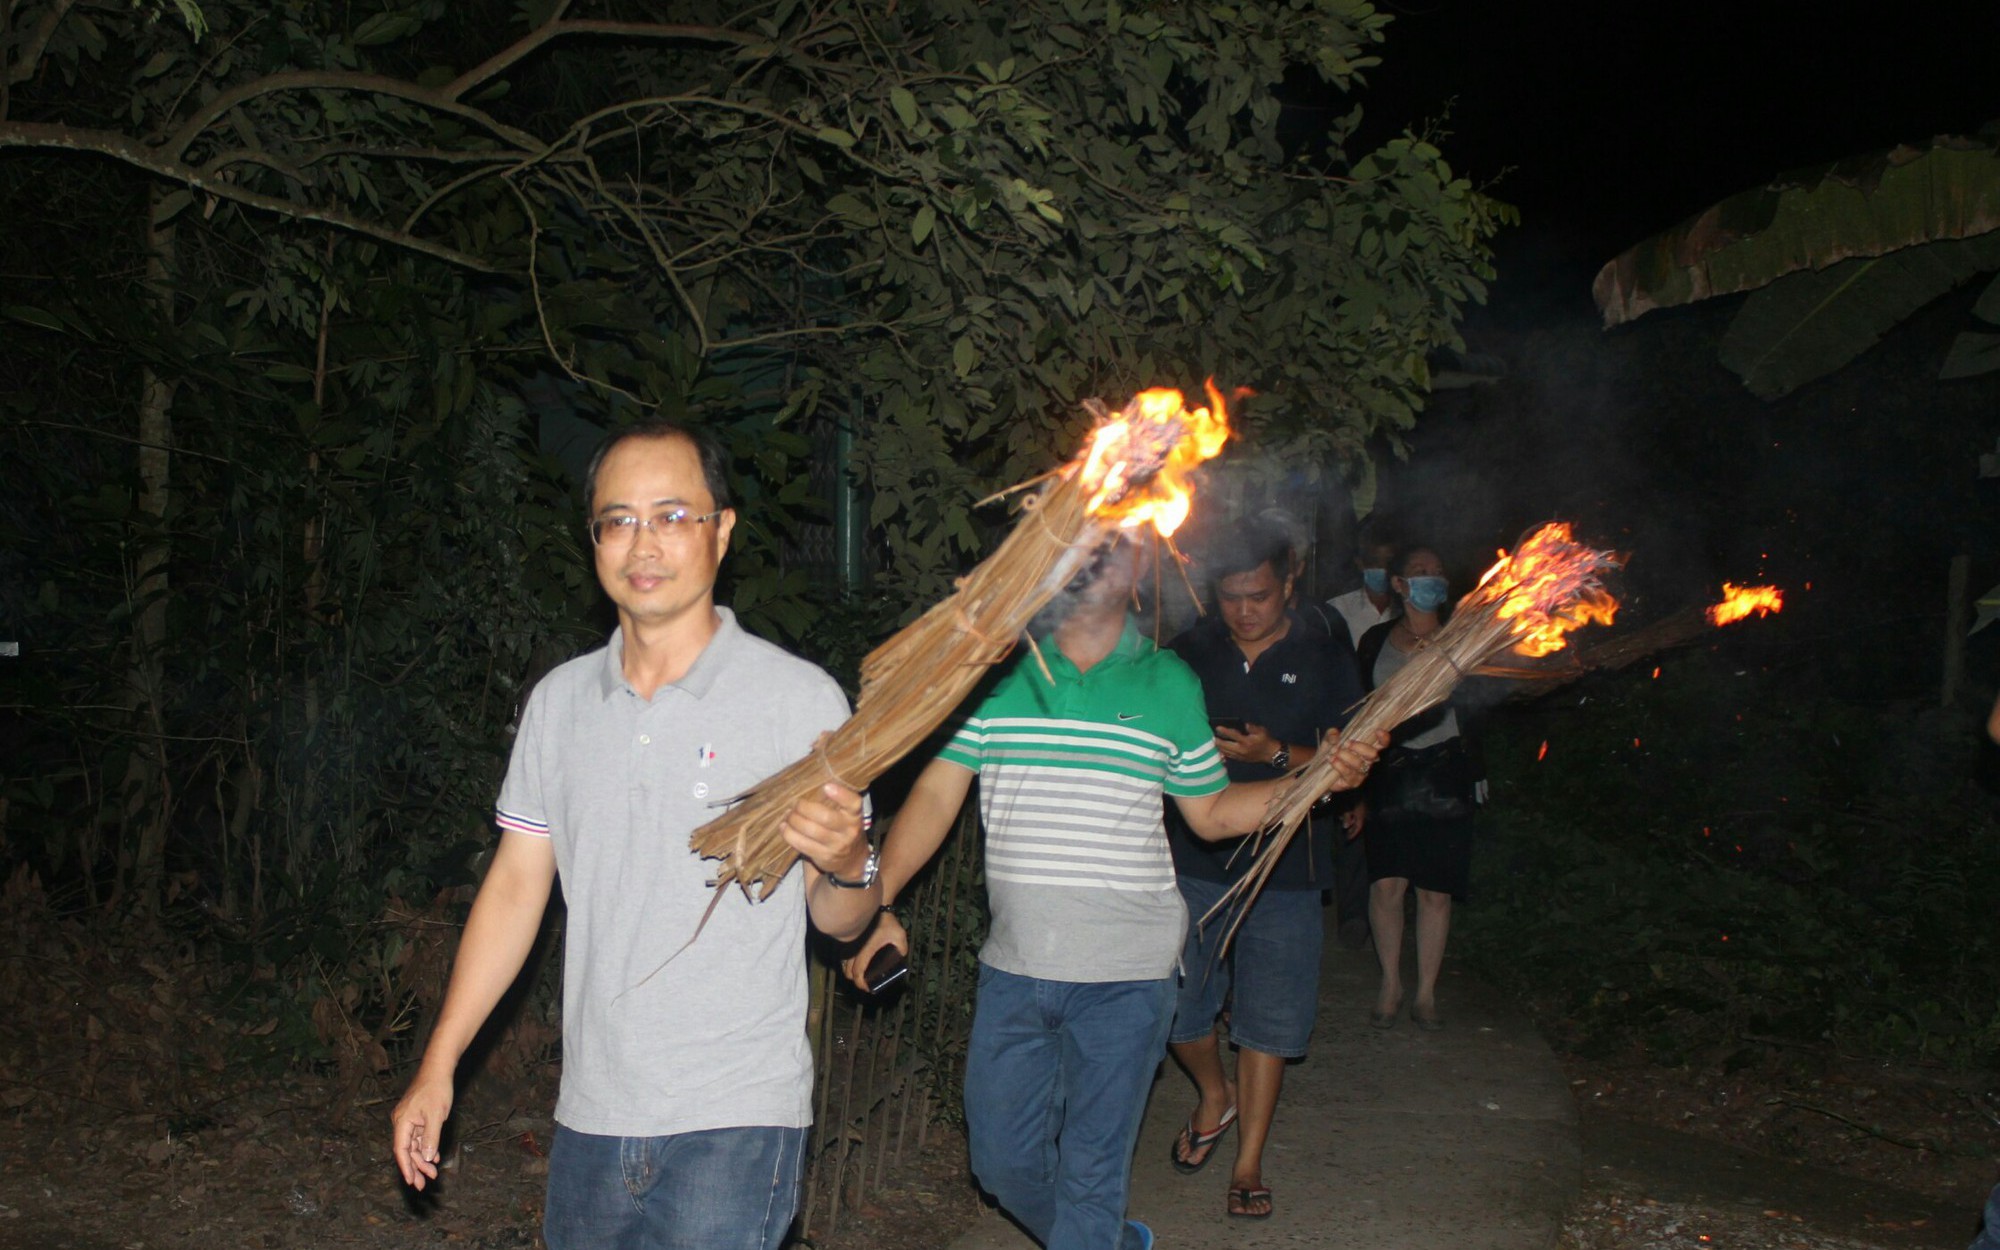 Đang đêm tối trời, tại một nơi ở Vĩnh Long, dân tình đốt đuốc lá dừa cháy rừng rực rủ nhau đi xem hát bội